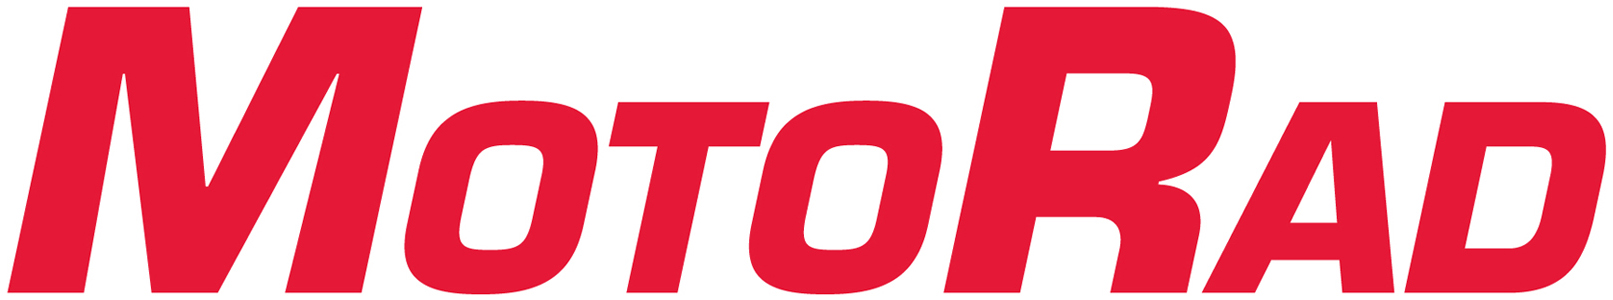 Логотип MOTORAD